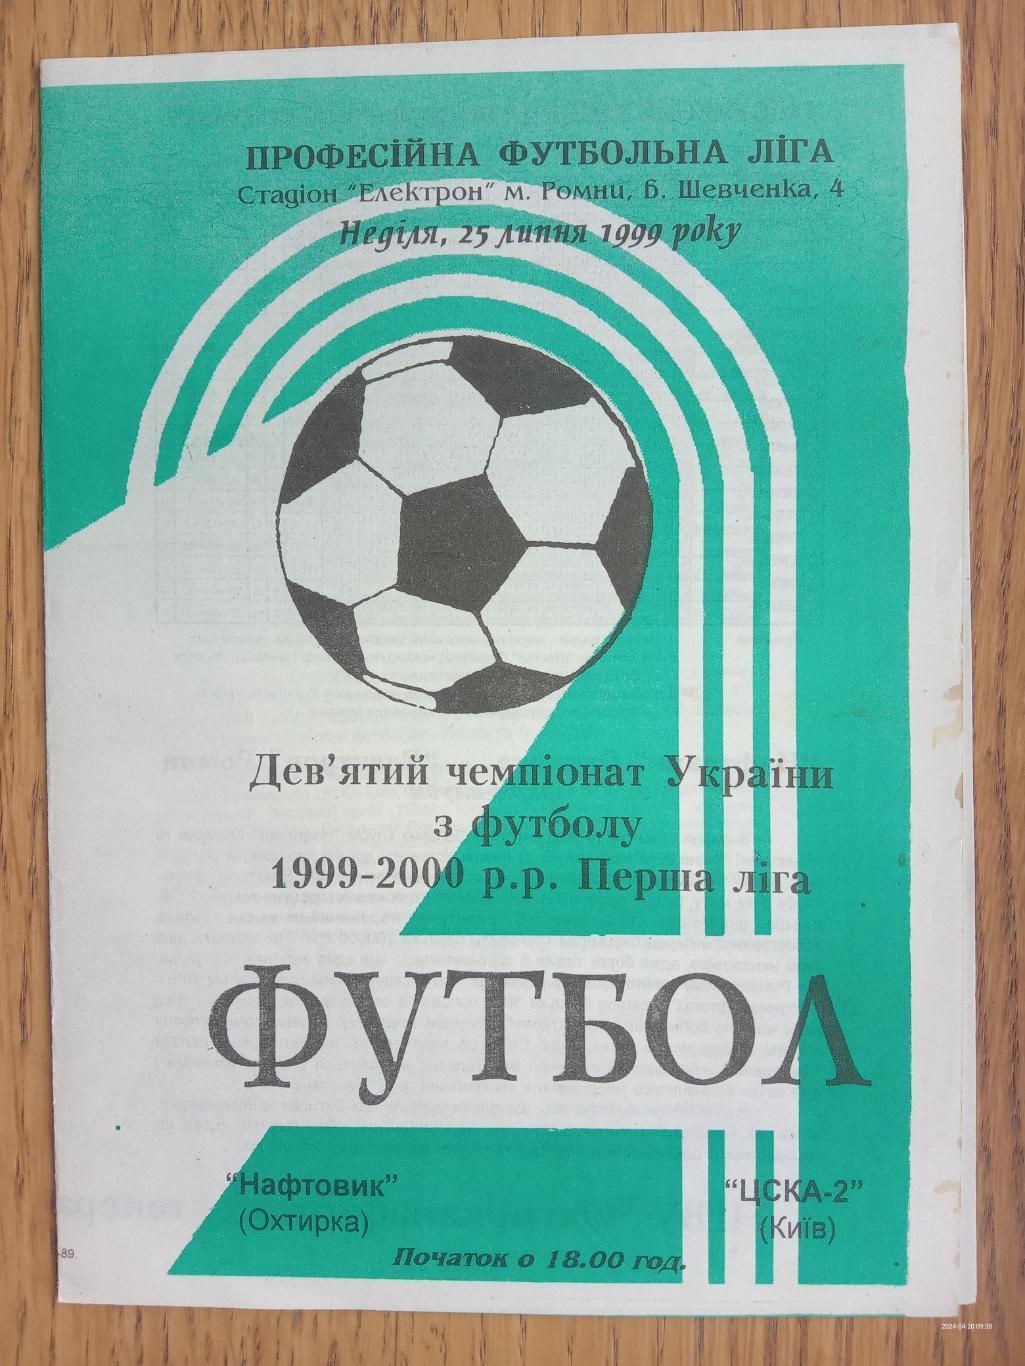 Нафтовик Охтирка - ЦСКА 2 Київ. 25.07.1999.#.м.